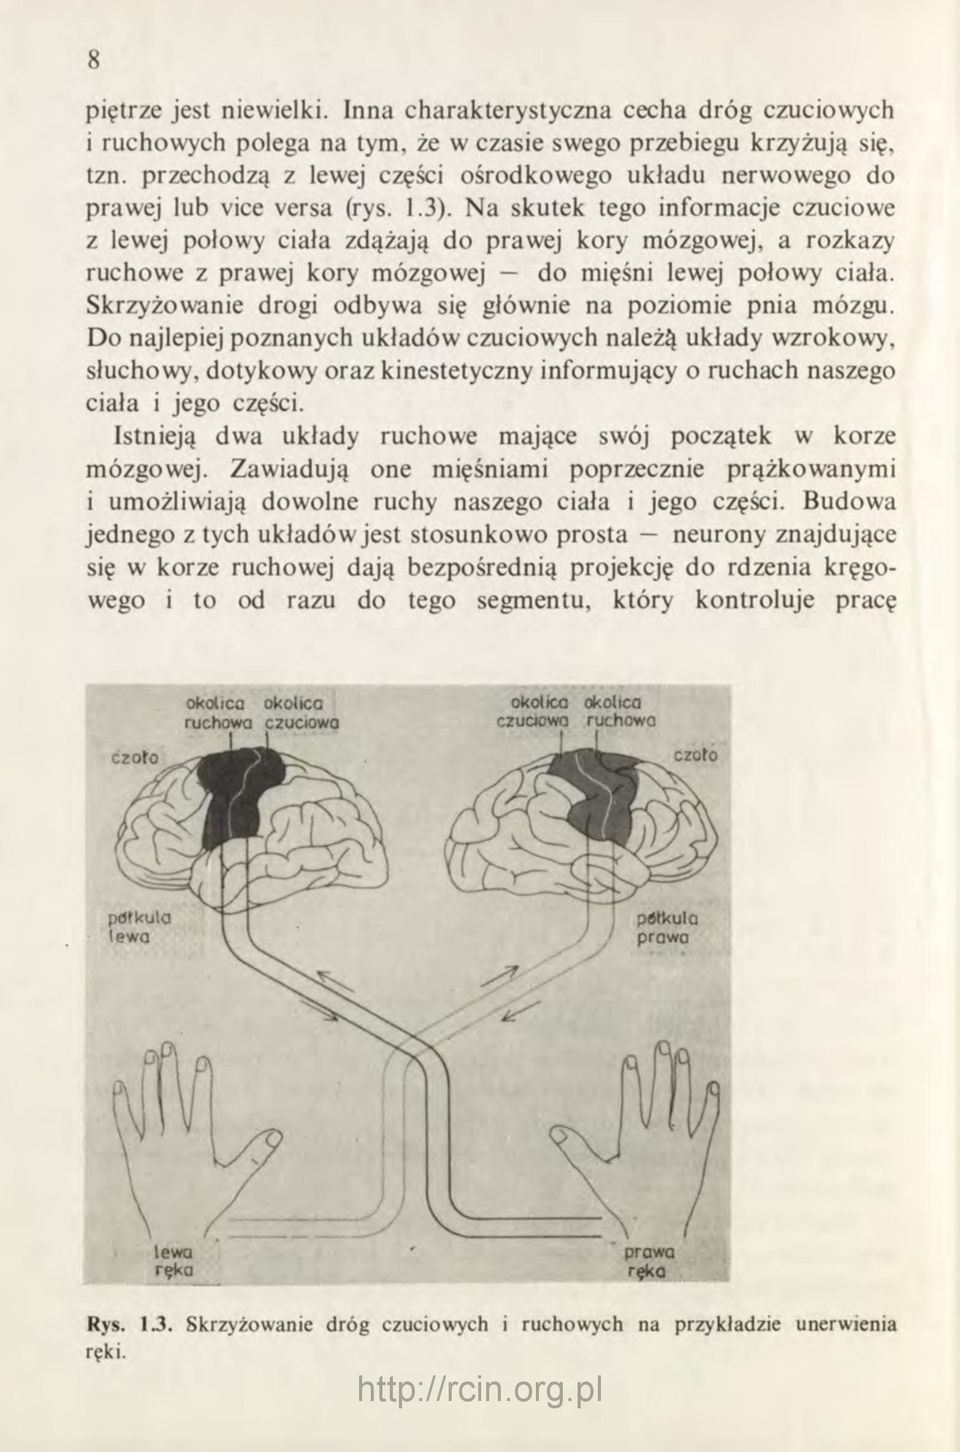 Na skutek tego informacje czuciowe z lewej połowy ciała zdążają do prawej kory mózgowej, a rozkazy ruchowe z prawej kory mózgowej do mięśni lewej połowy ciała.